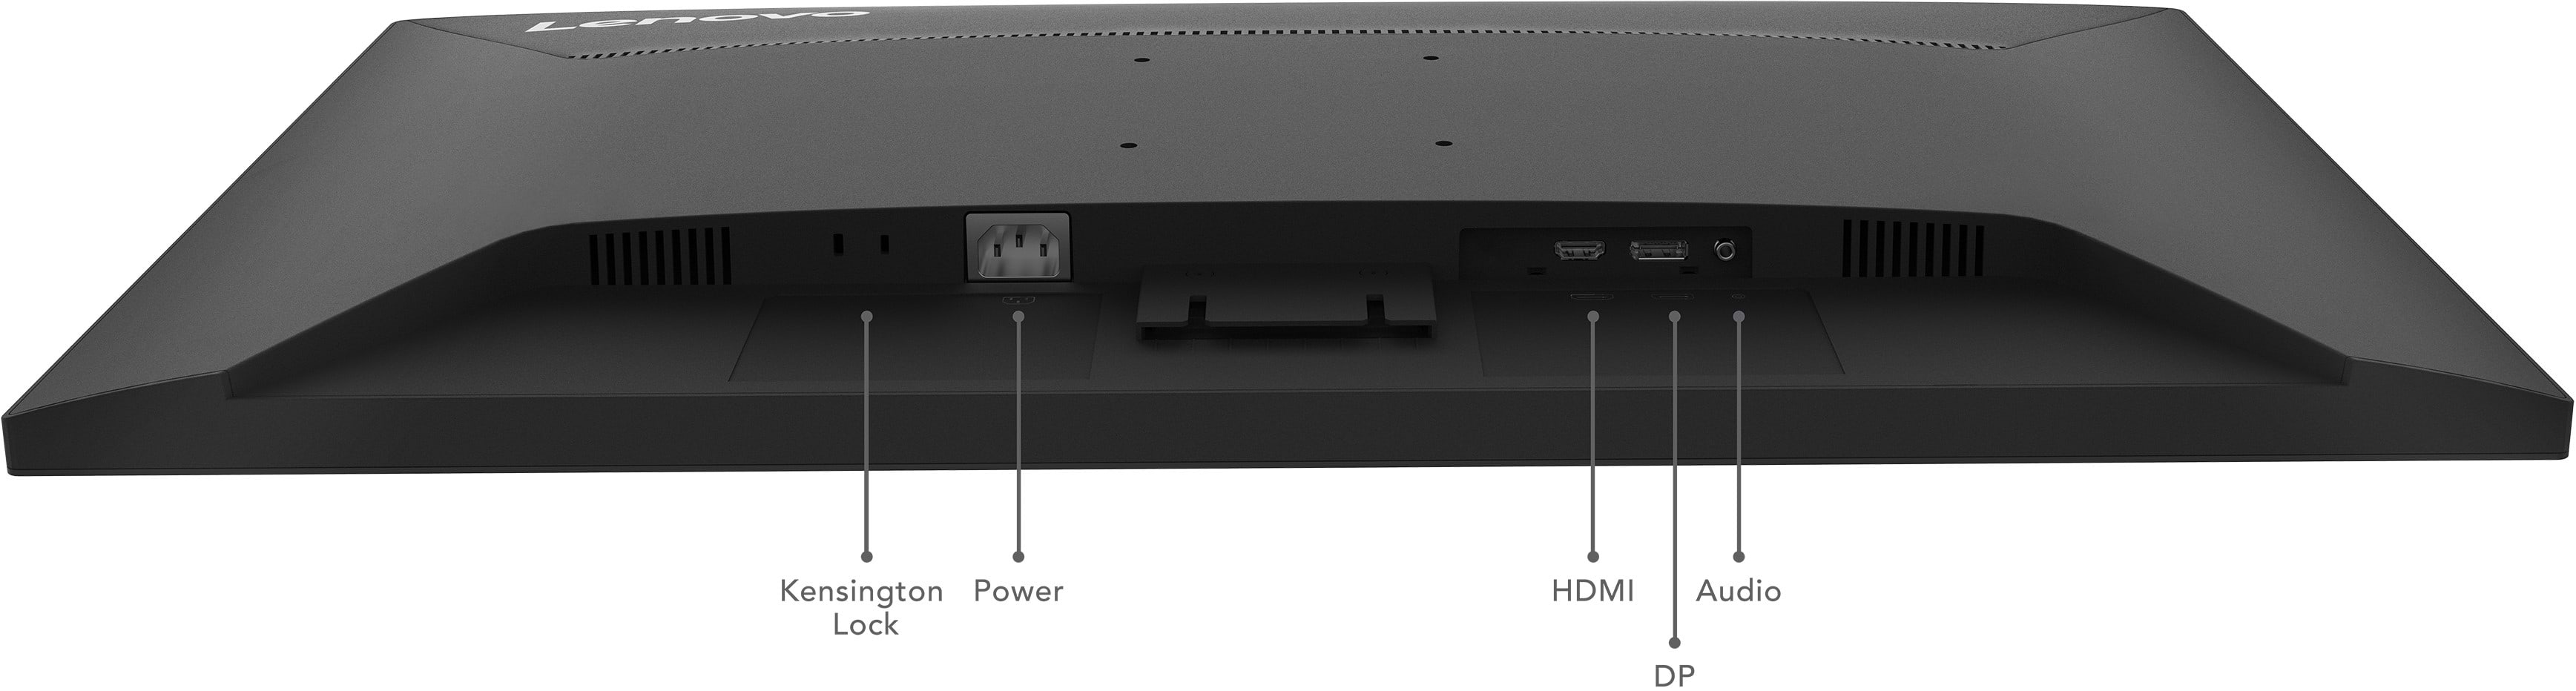 מסך מחשב 31.5'' Lenovo D32-40 FHD VA LED 4ms - צבע שחור שלוש שנות אחריות ע"י היבואן הרשמי